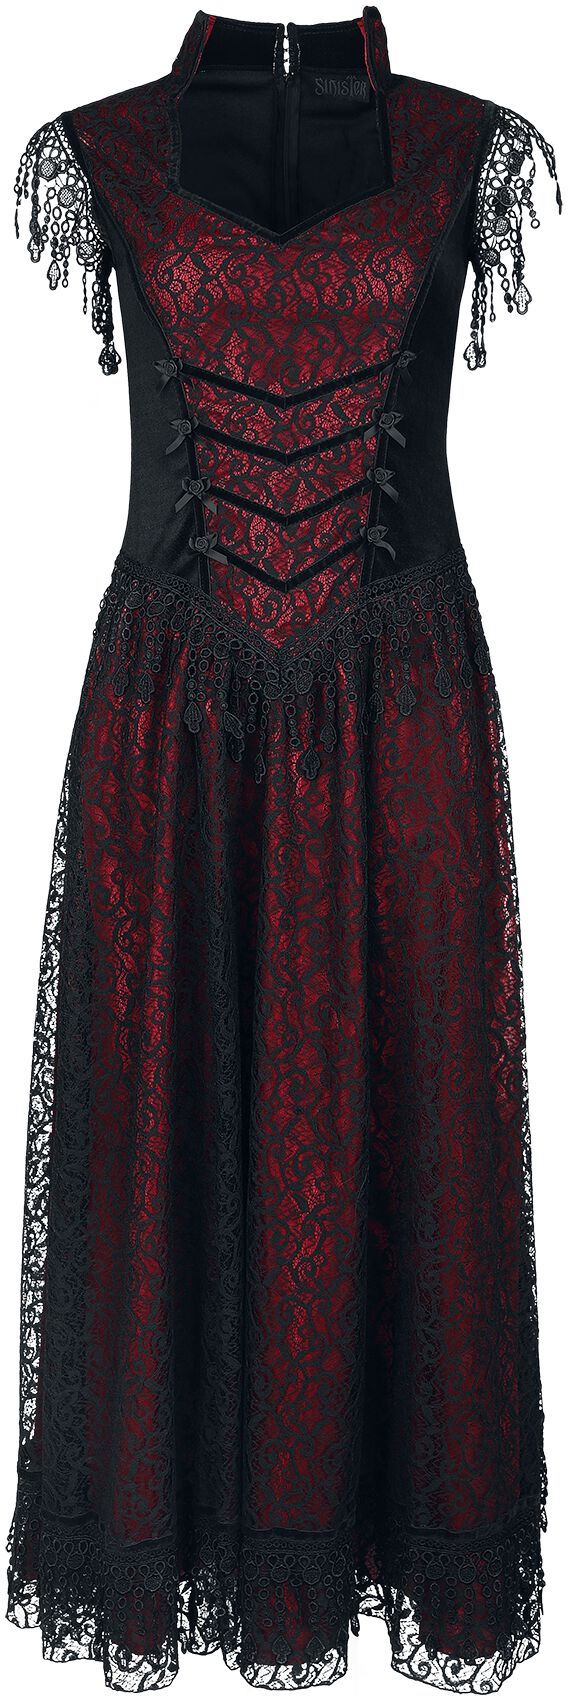 Sinister Gothic Gothic Dress Langes Kleid schwarz rot in L